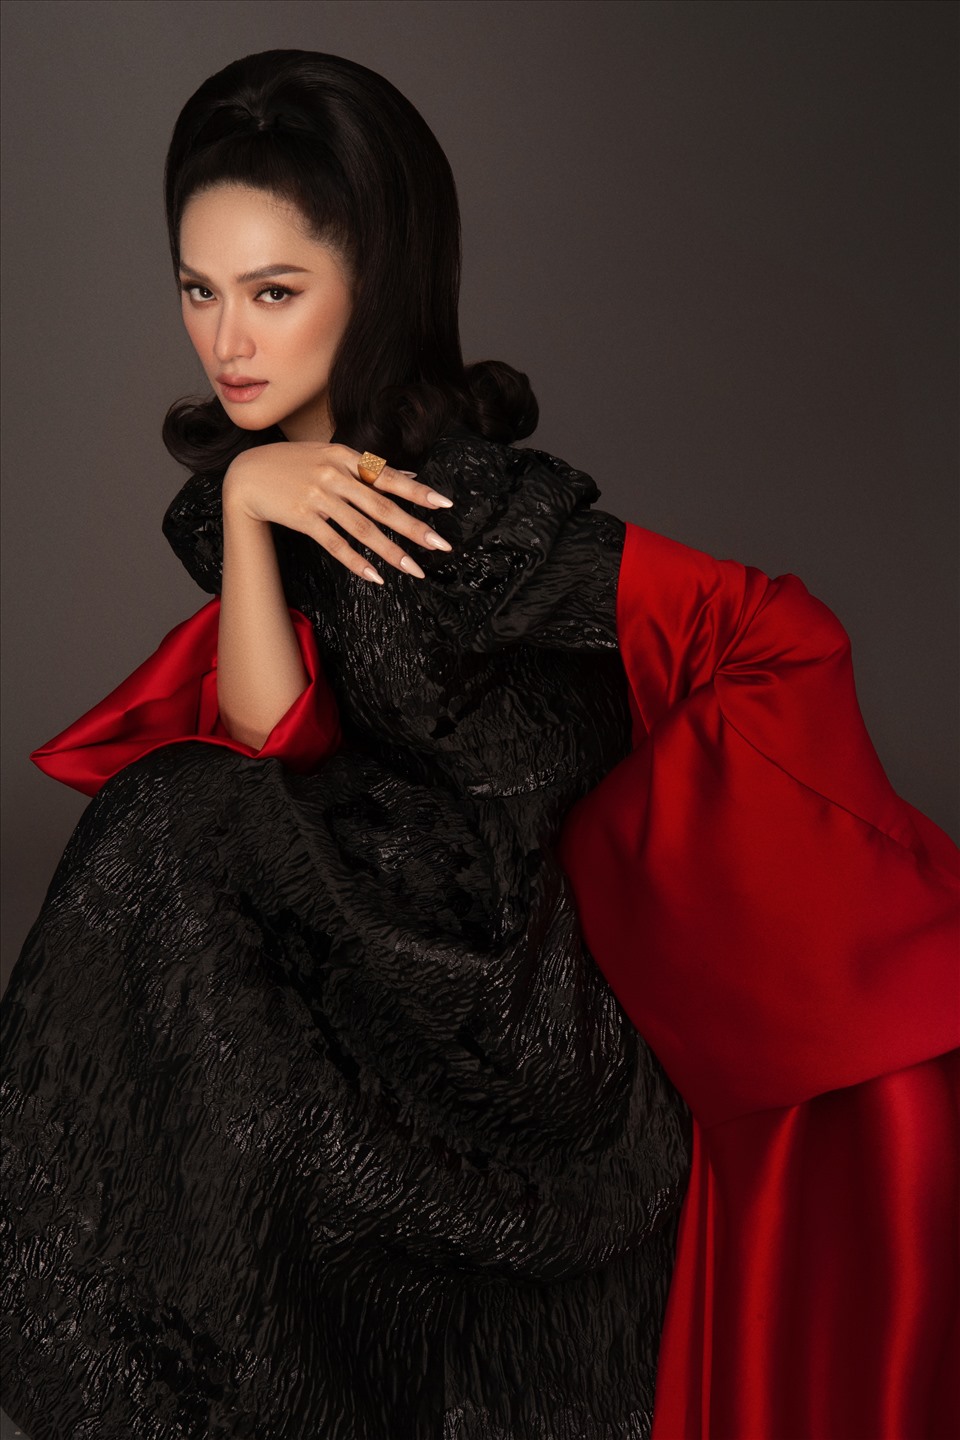 Trong bộ sưu tập mới của SIXDO, Hoa hậu Hương Giang điệu đà, nữ tính với chiếc đầm đen kín đáo. Điểm nhấn là phần tay bồng mang phong cách cổ điển kết hợp áo choàng màu đỏ tạo nên một vẻ đẹp đầy bí hiểm. Ảnh: Milor Trần